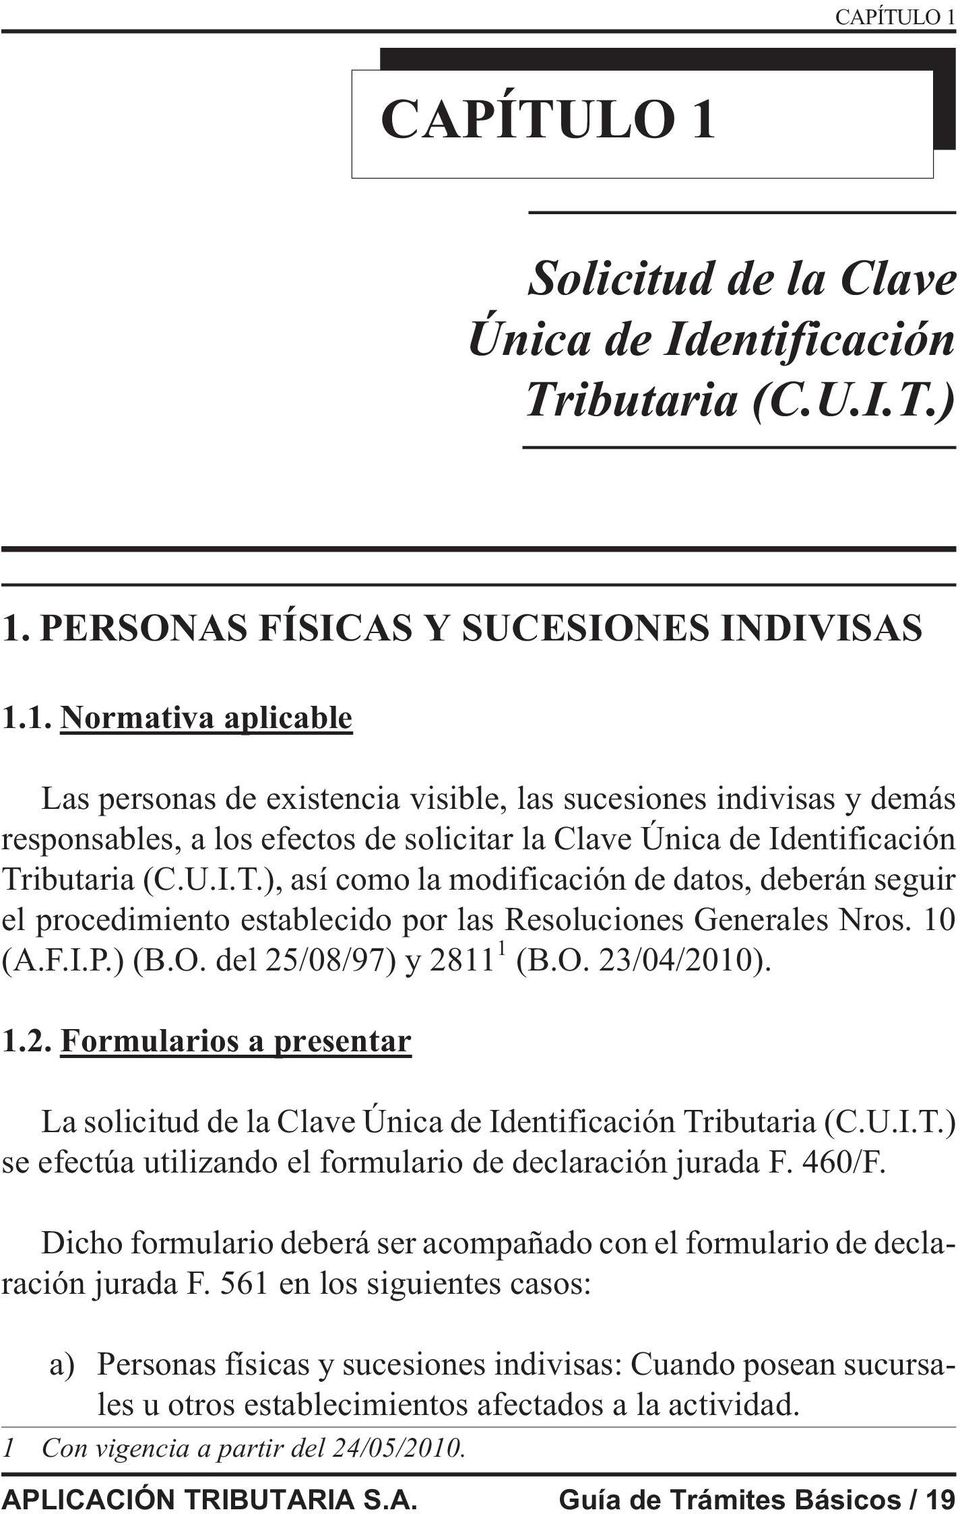 /08/97) y 2811 1 (B.O. 23/04/2010). 1.2. Formularios a presentar La solicitud de la Clave Única de Identificación Tributaria (C.U.I.T.) se efectúa utilizando el formulario de declaración jurada F.